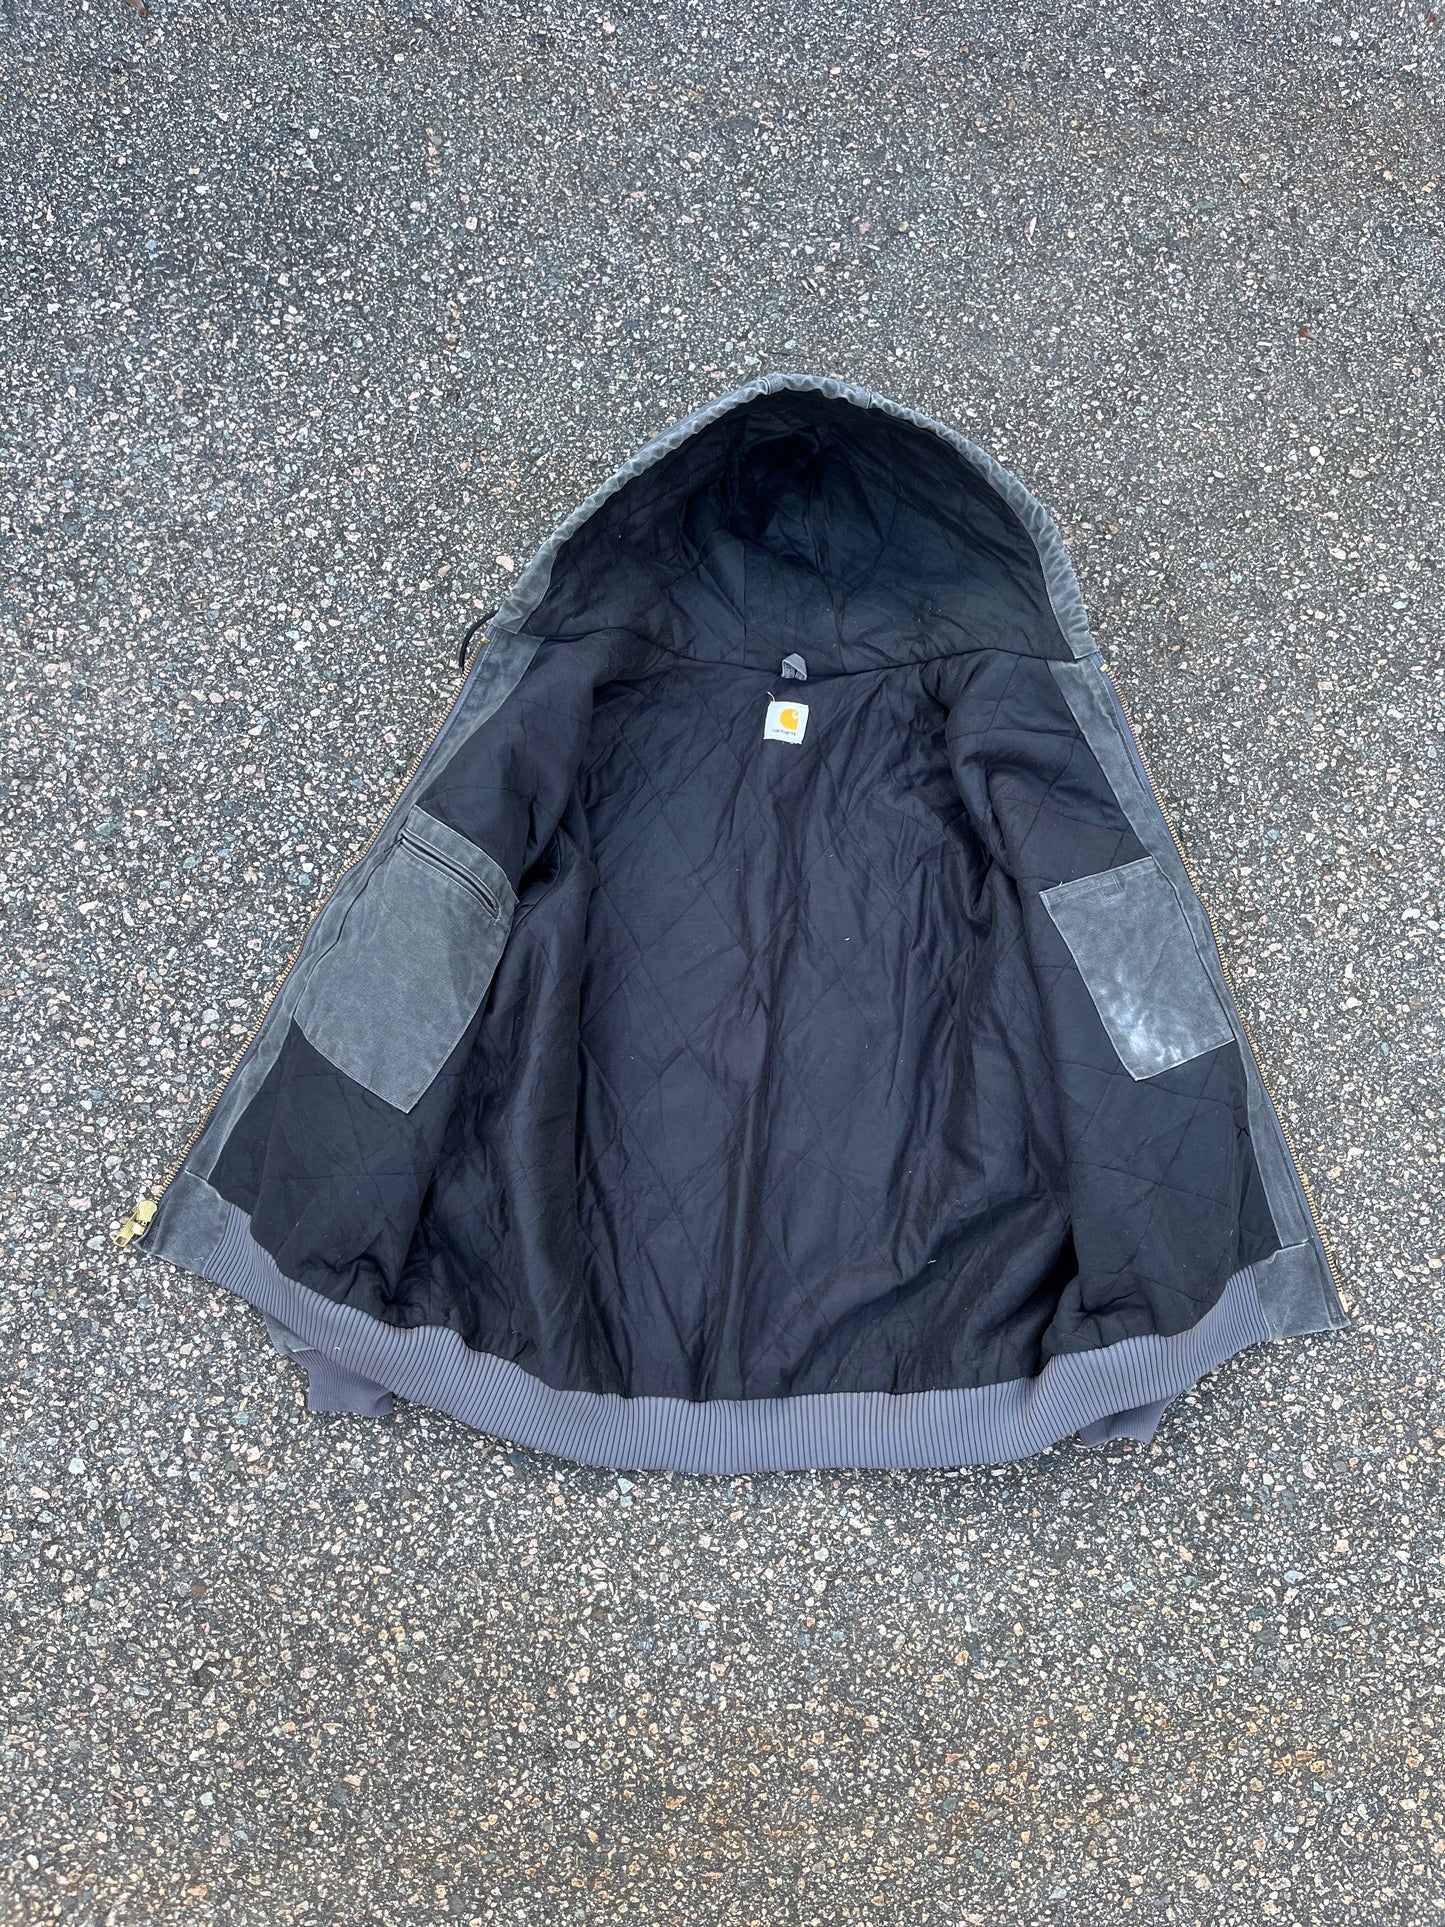 Faded Slate Gray Carhartt Active Jacket - 2XL